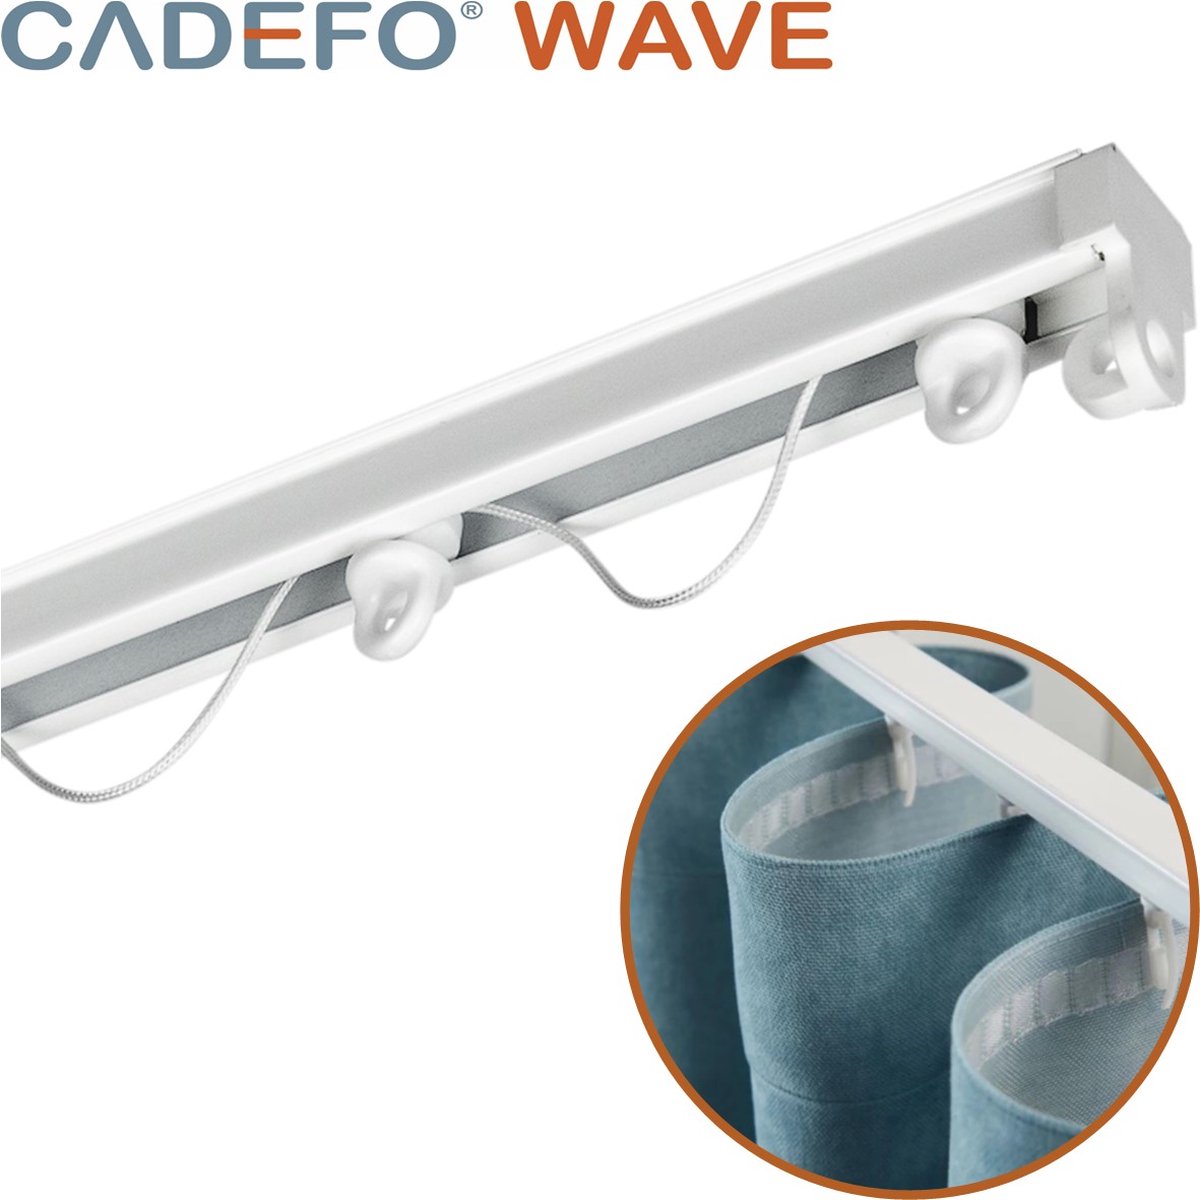 CADEFO WAVE (351 - 400 cm) Gordijnrails - Compleet op maat! - UIT 1 STUK - Leverbaar tot 6 meter - Plafondbevestiging - Lengte 384 cm